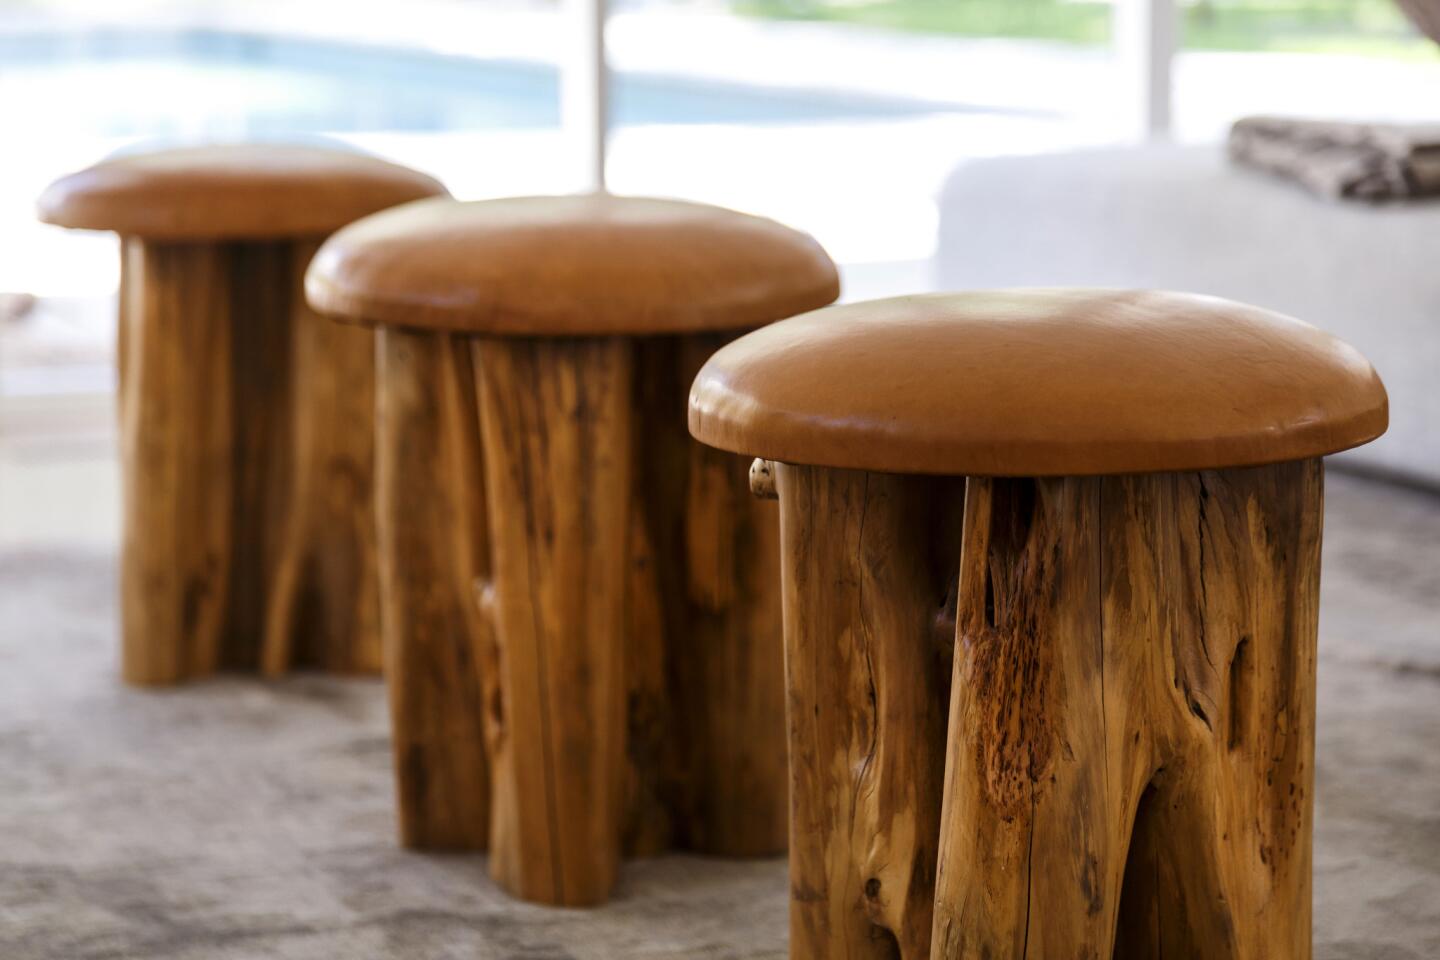 Mushroom seat stools